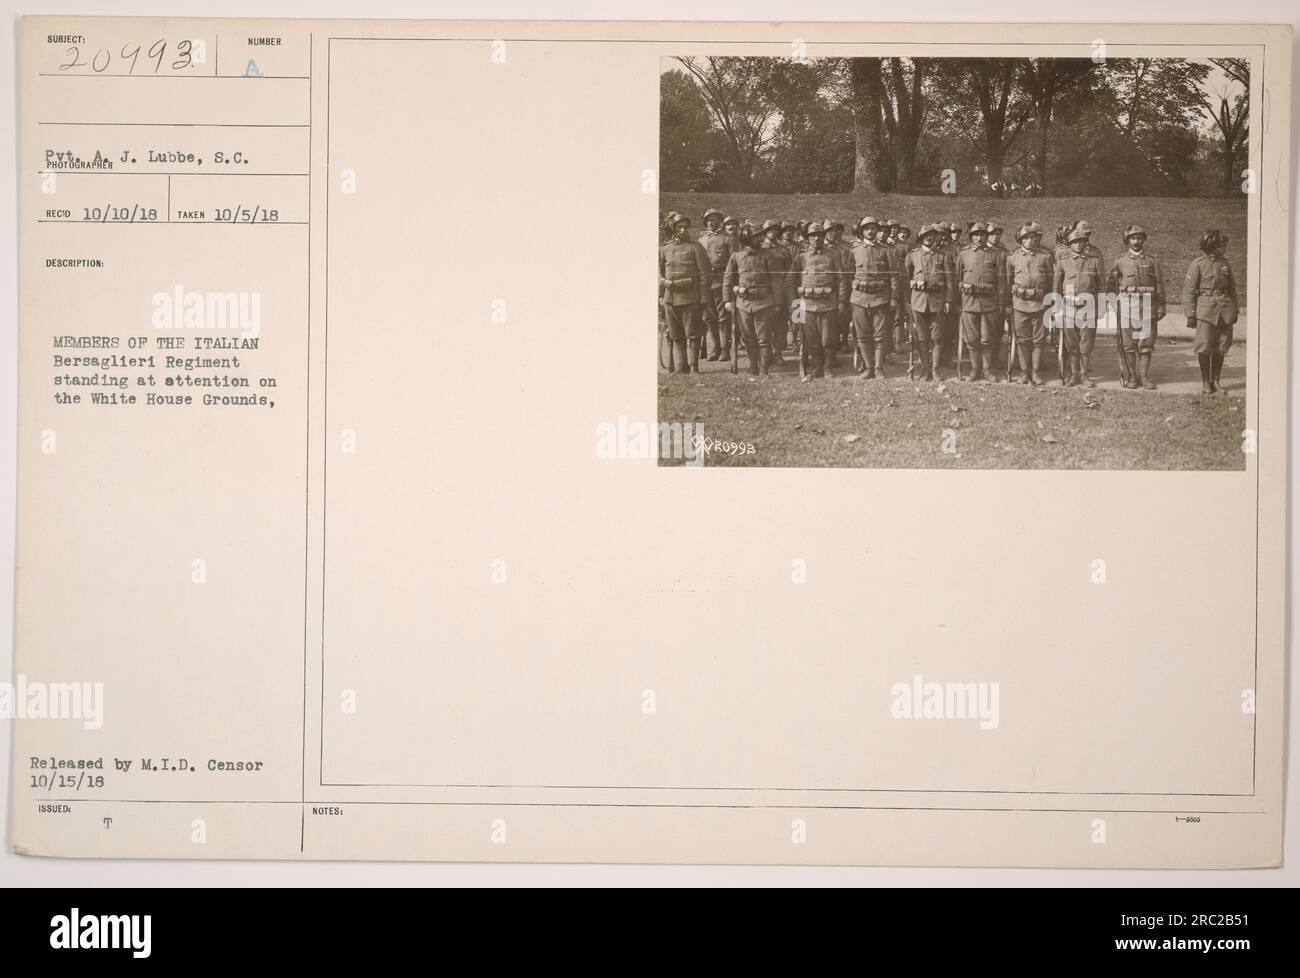 Das italienische Bersaglieri-Regiment steht auf dem Gelände des Weißen Hauses. Foto aufgenommen am 5. Oktober 1918 und veröffentlicht von M.I.D. Zensor am 15. Oktober 1918. Referenznummer ist 111-SC-20993. PR0995 Fabre. Stockfoto